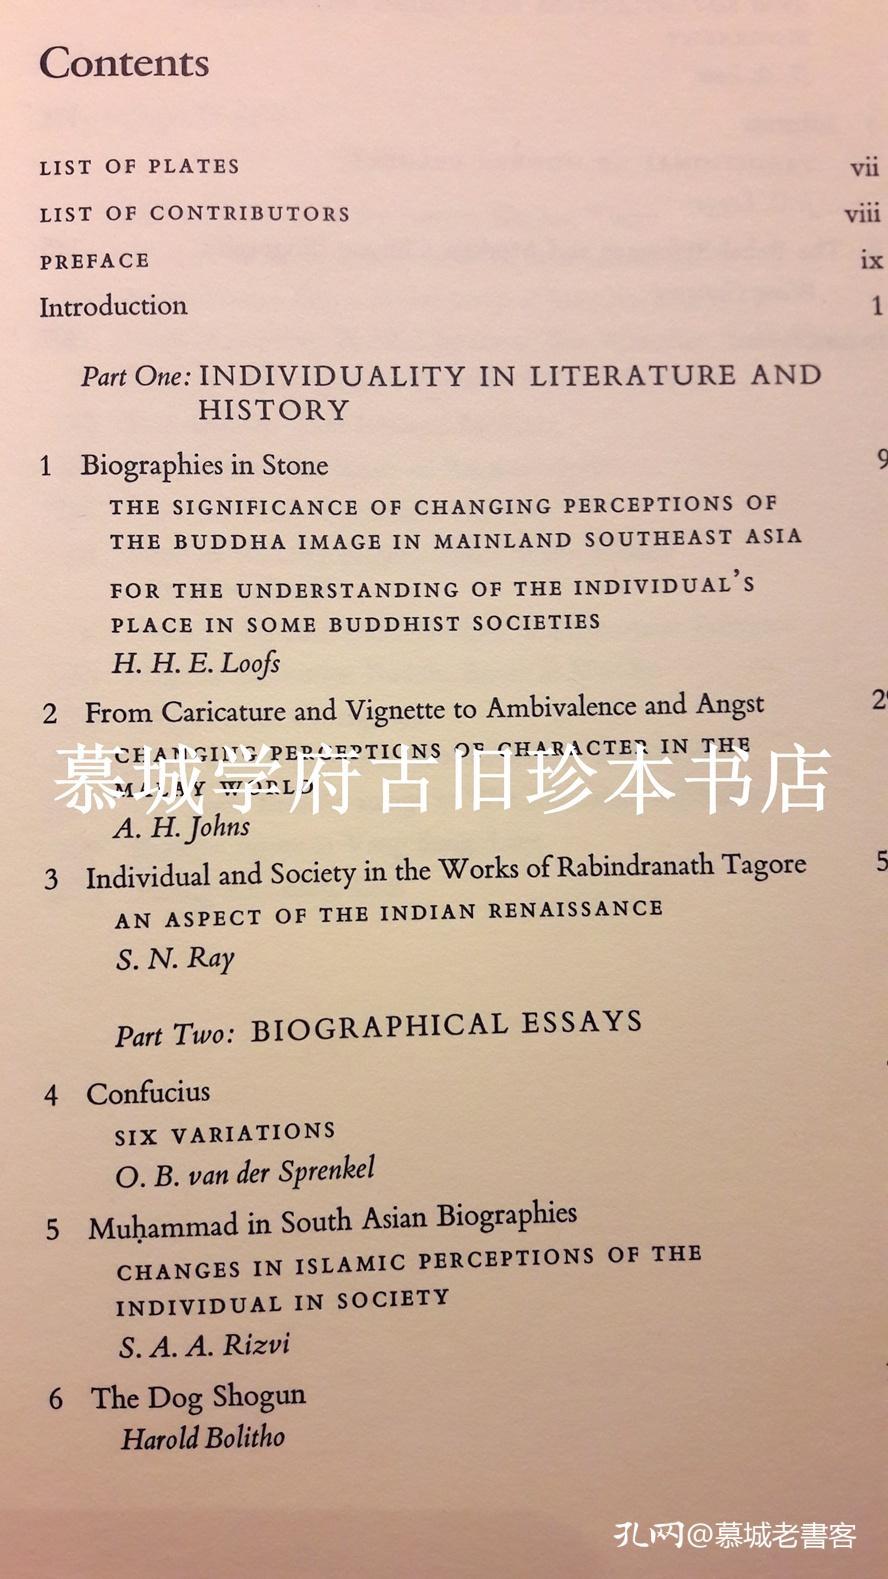 【签赠德国汉学家傅海波HERBERT FRANKE】王赓武主编《自我与传记 - 亚洲的个人与社会论文集》SELF AND BIOGRAPHY - ESSAYS ON THE INDIVIDUAL AND SOCIETY IN ASIA. EDITED BY  Wang, Gungwu